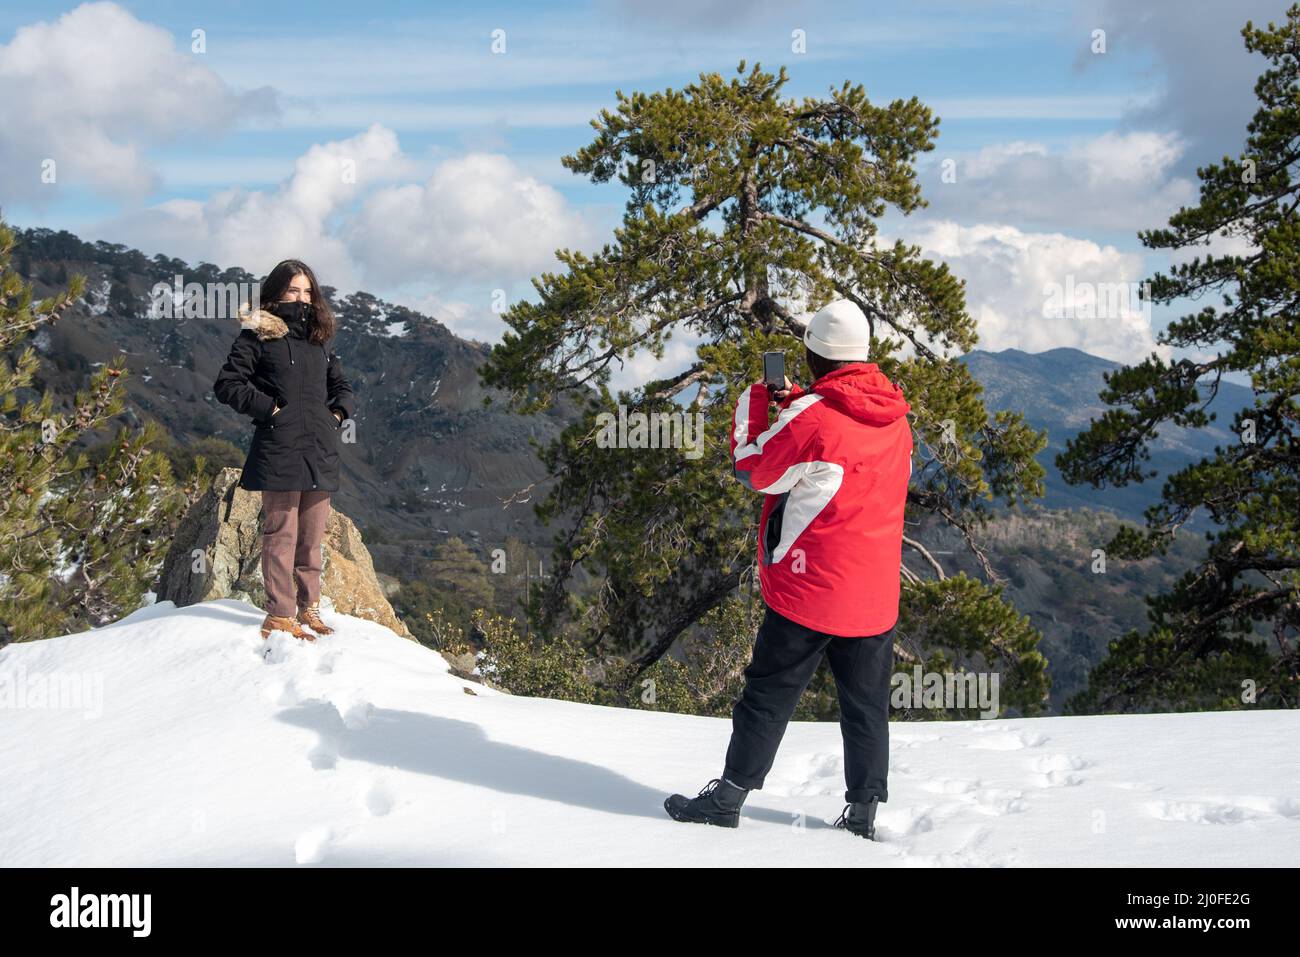 Deux jeunes adolescents heureux prenant des photos avec un téléphone portable sur une montagne enneigée. Banque D'Images